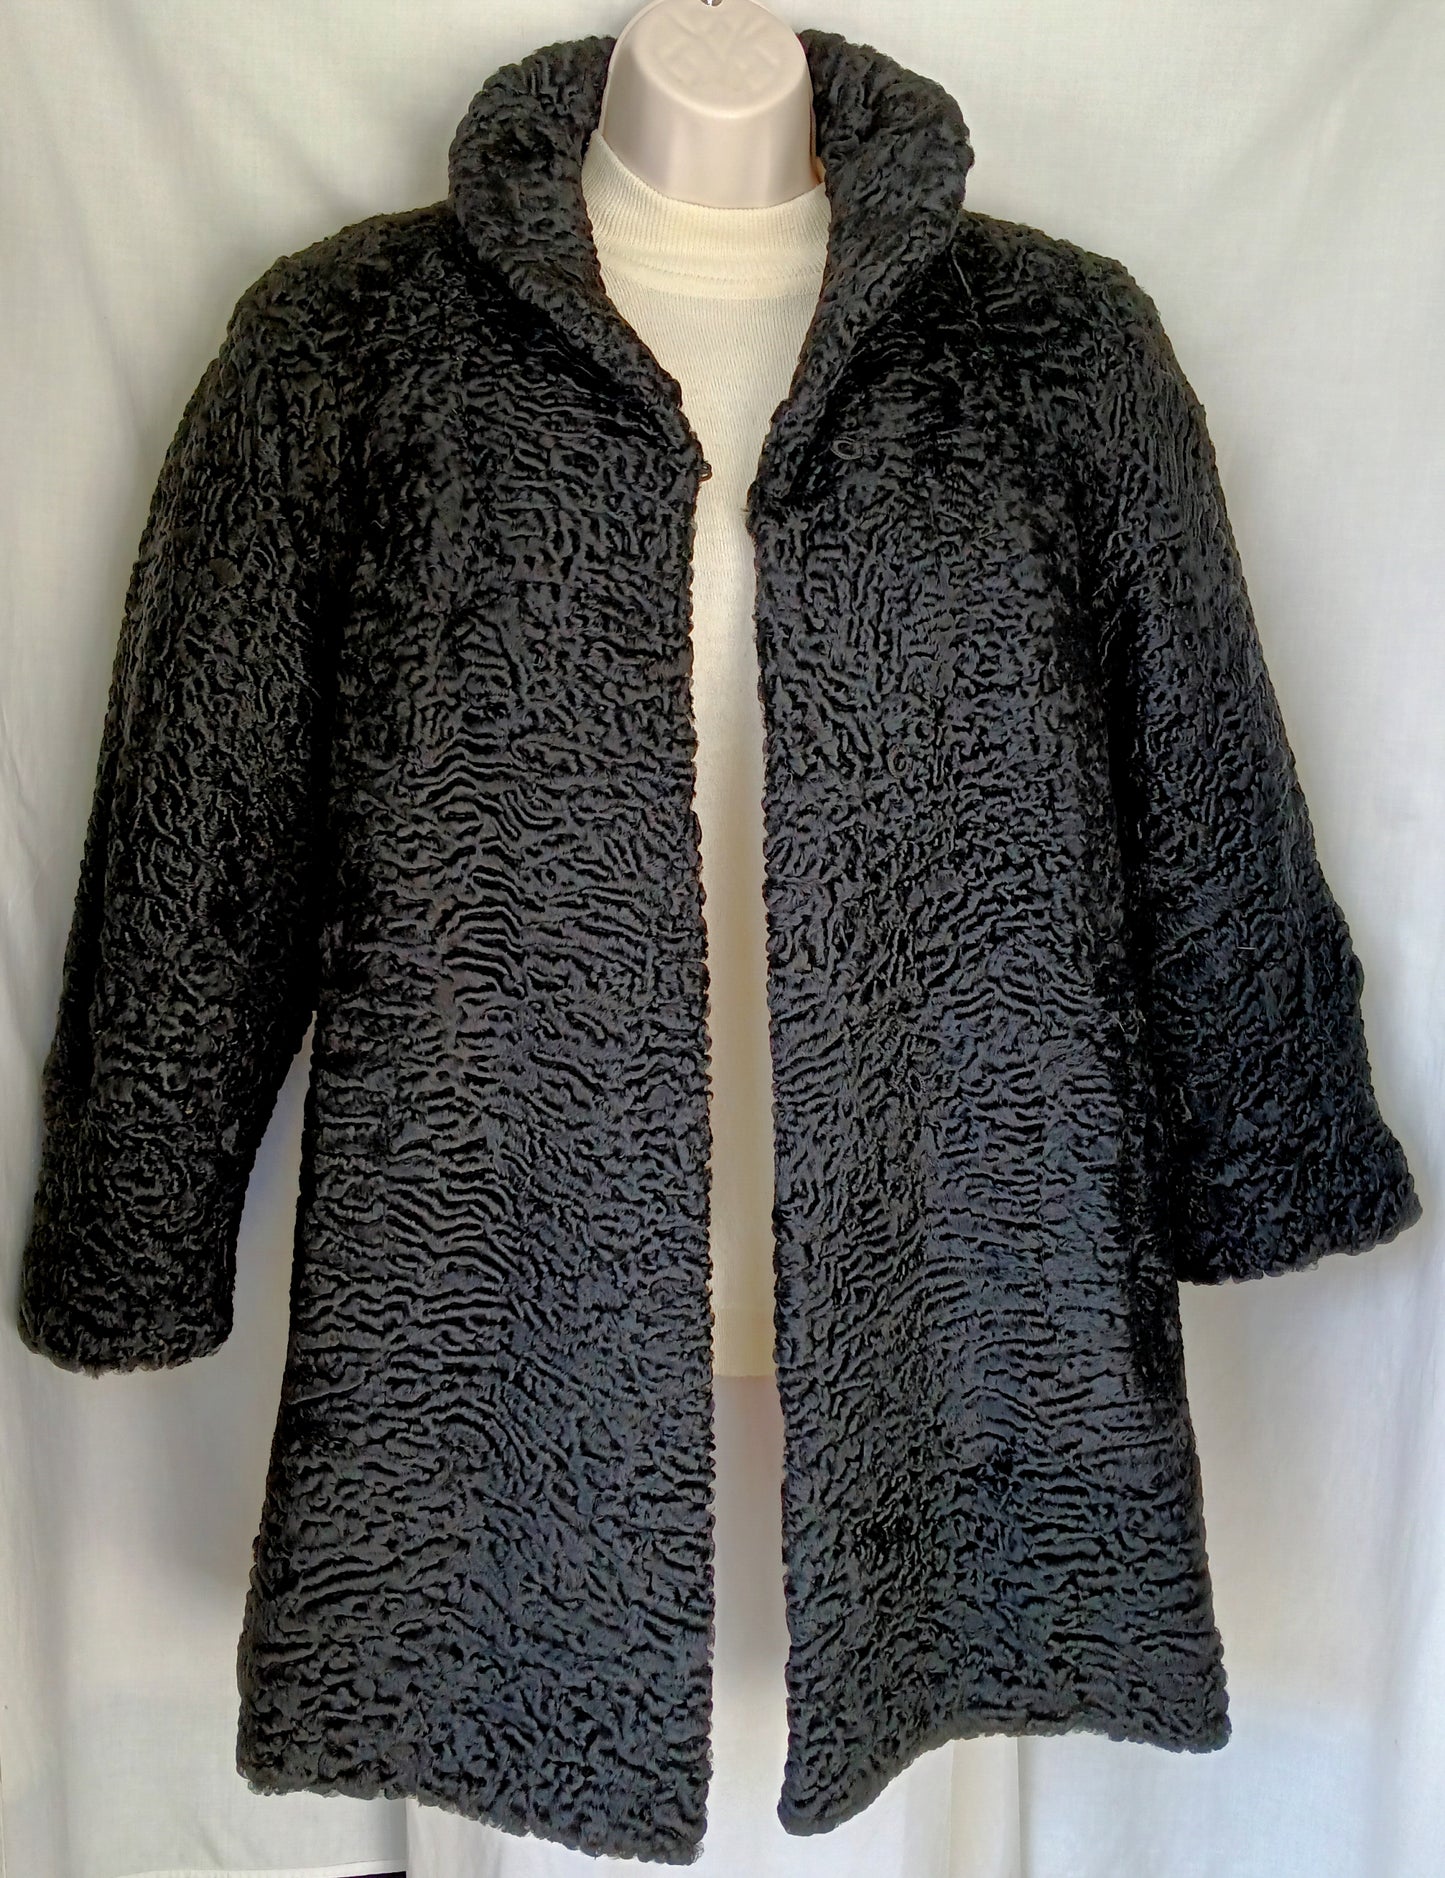 Vintage Black Fur Astrakhan Karakul Persian Lamb Coat Women Winter Coat Genuine Fur Coat - Size M